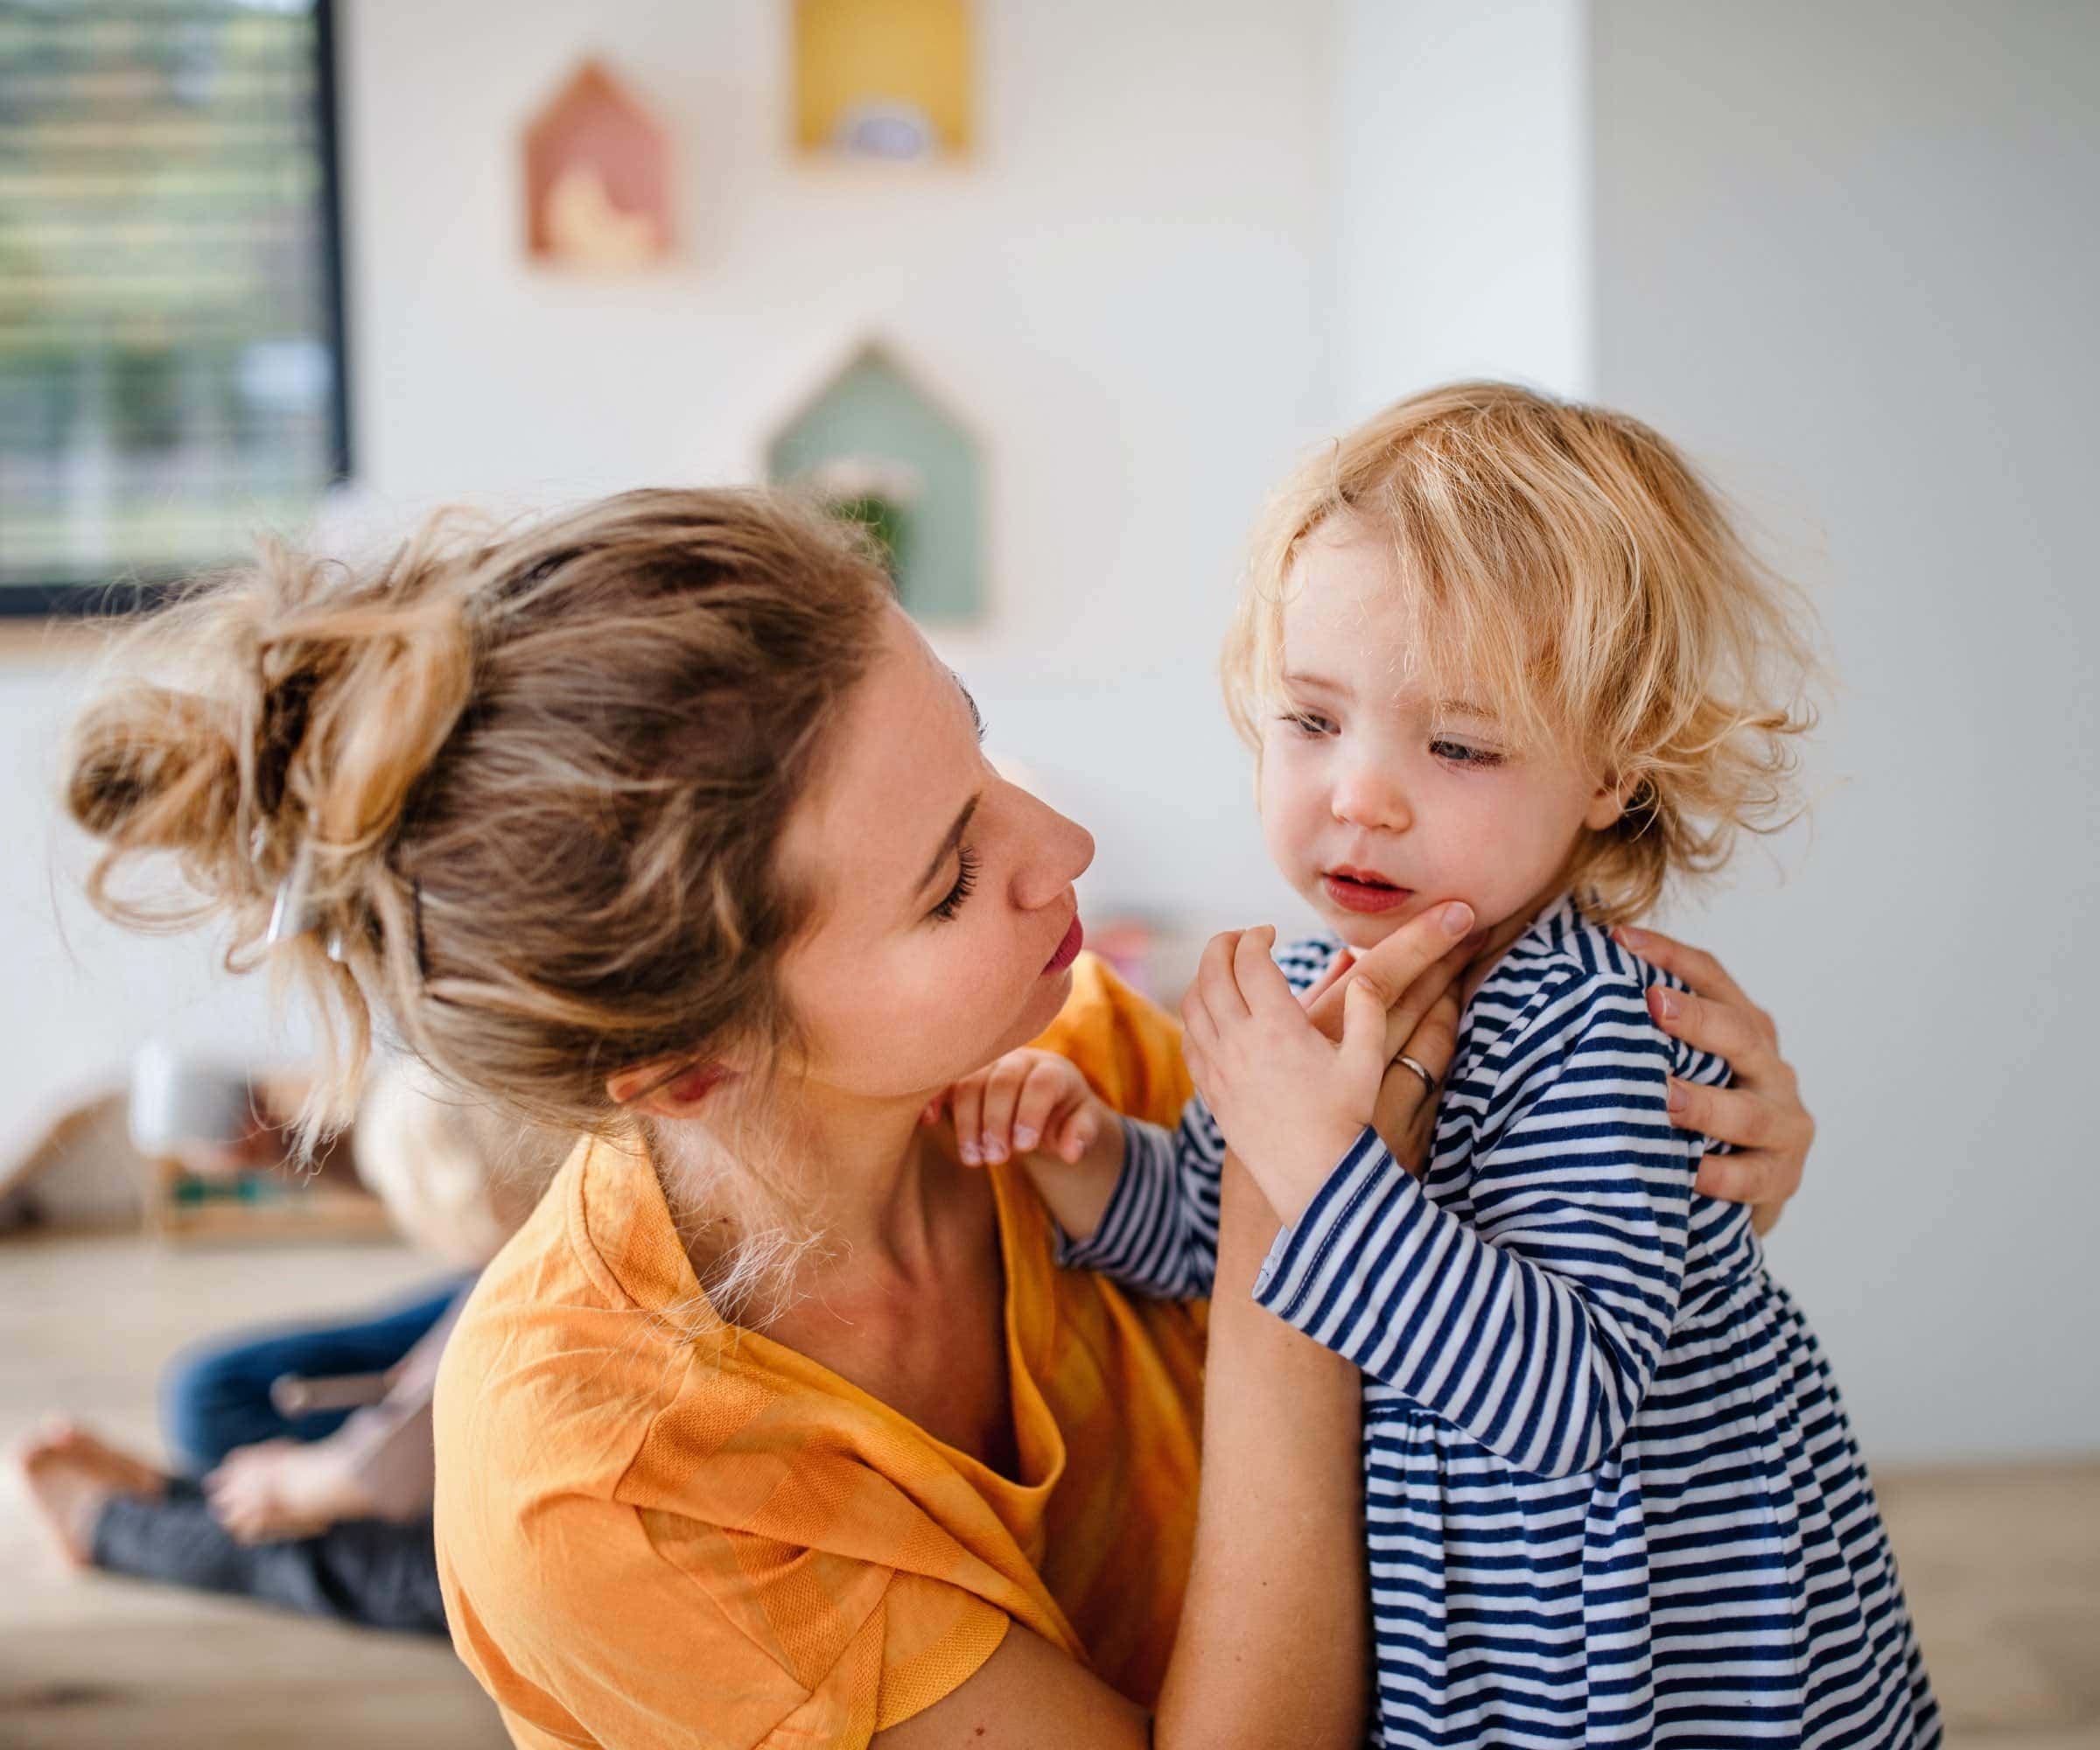 Paartherapie-Kolumne: Was tun, wenn das Kind immer nach Mama verlangt? Wer bleibt zu Hause, wenn das Kind krank ist? // HIMBEER